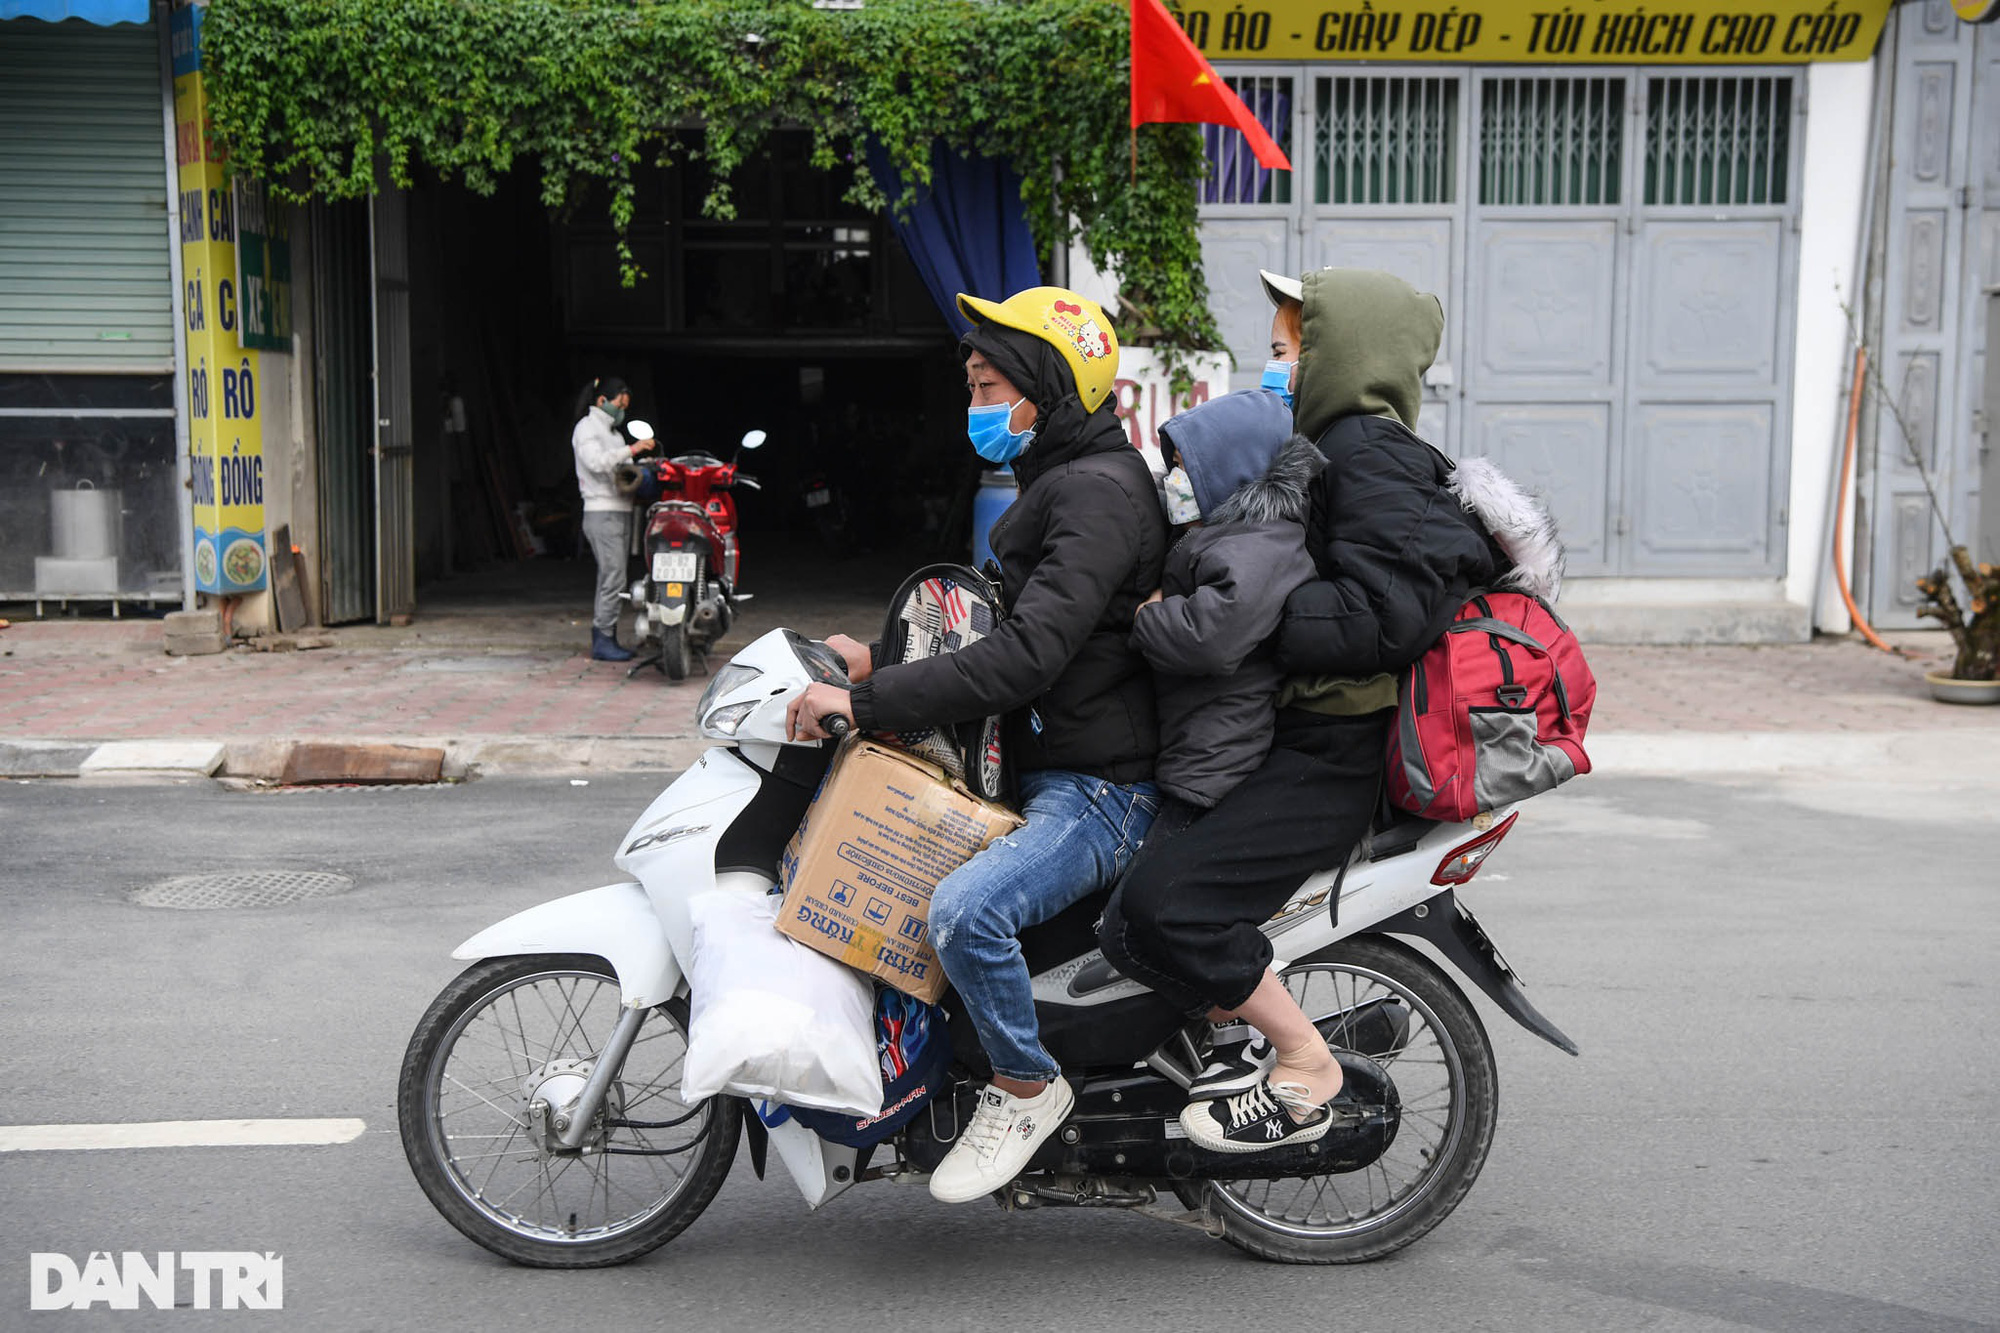 Người dân nườm nượp trở về Hà Nội sau kỳ nghỉ Tết, cửa ngõ phía Tây ùn tắc - Ảnh 8.